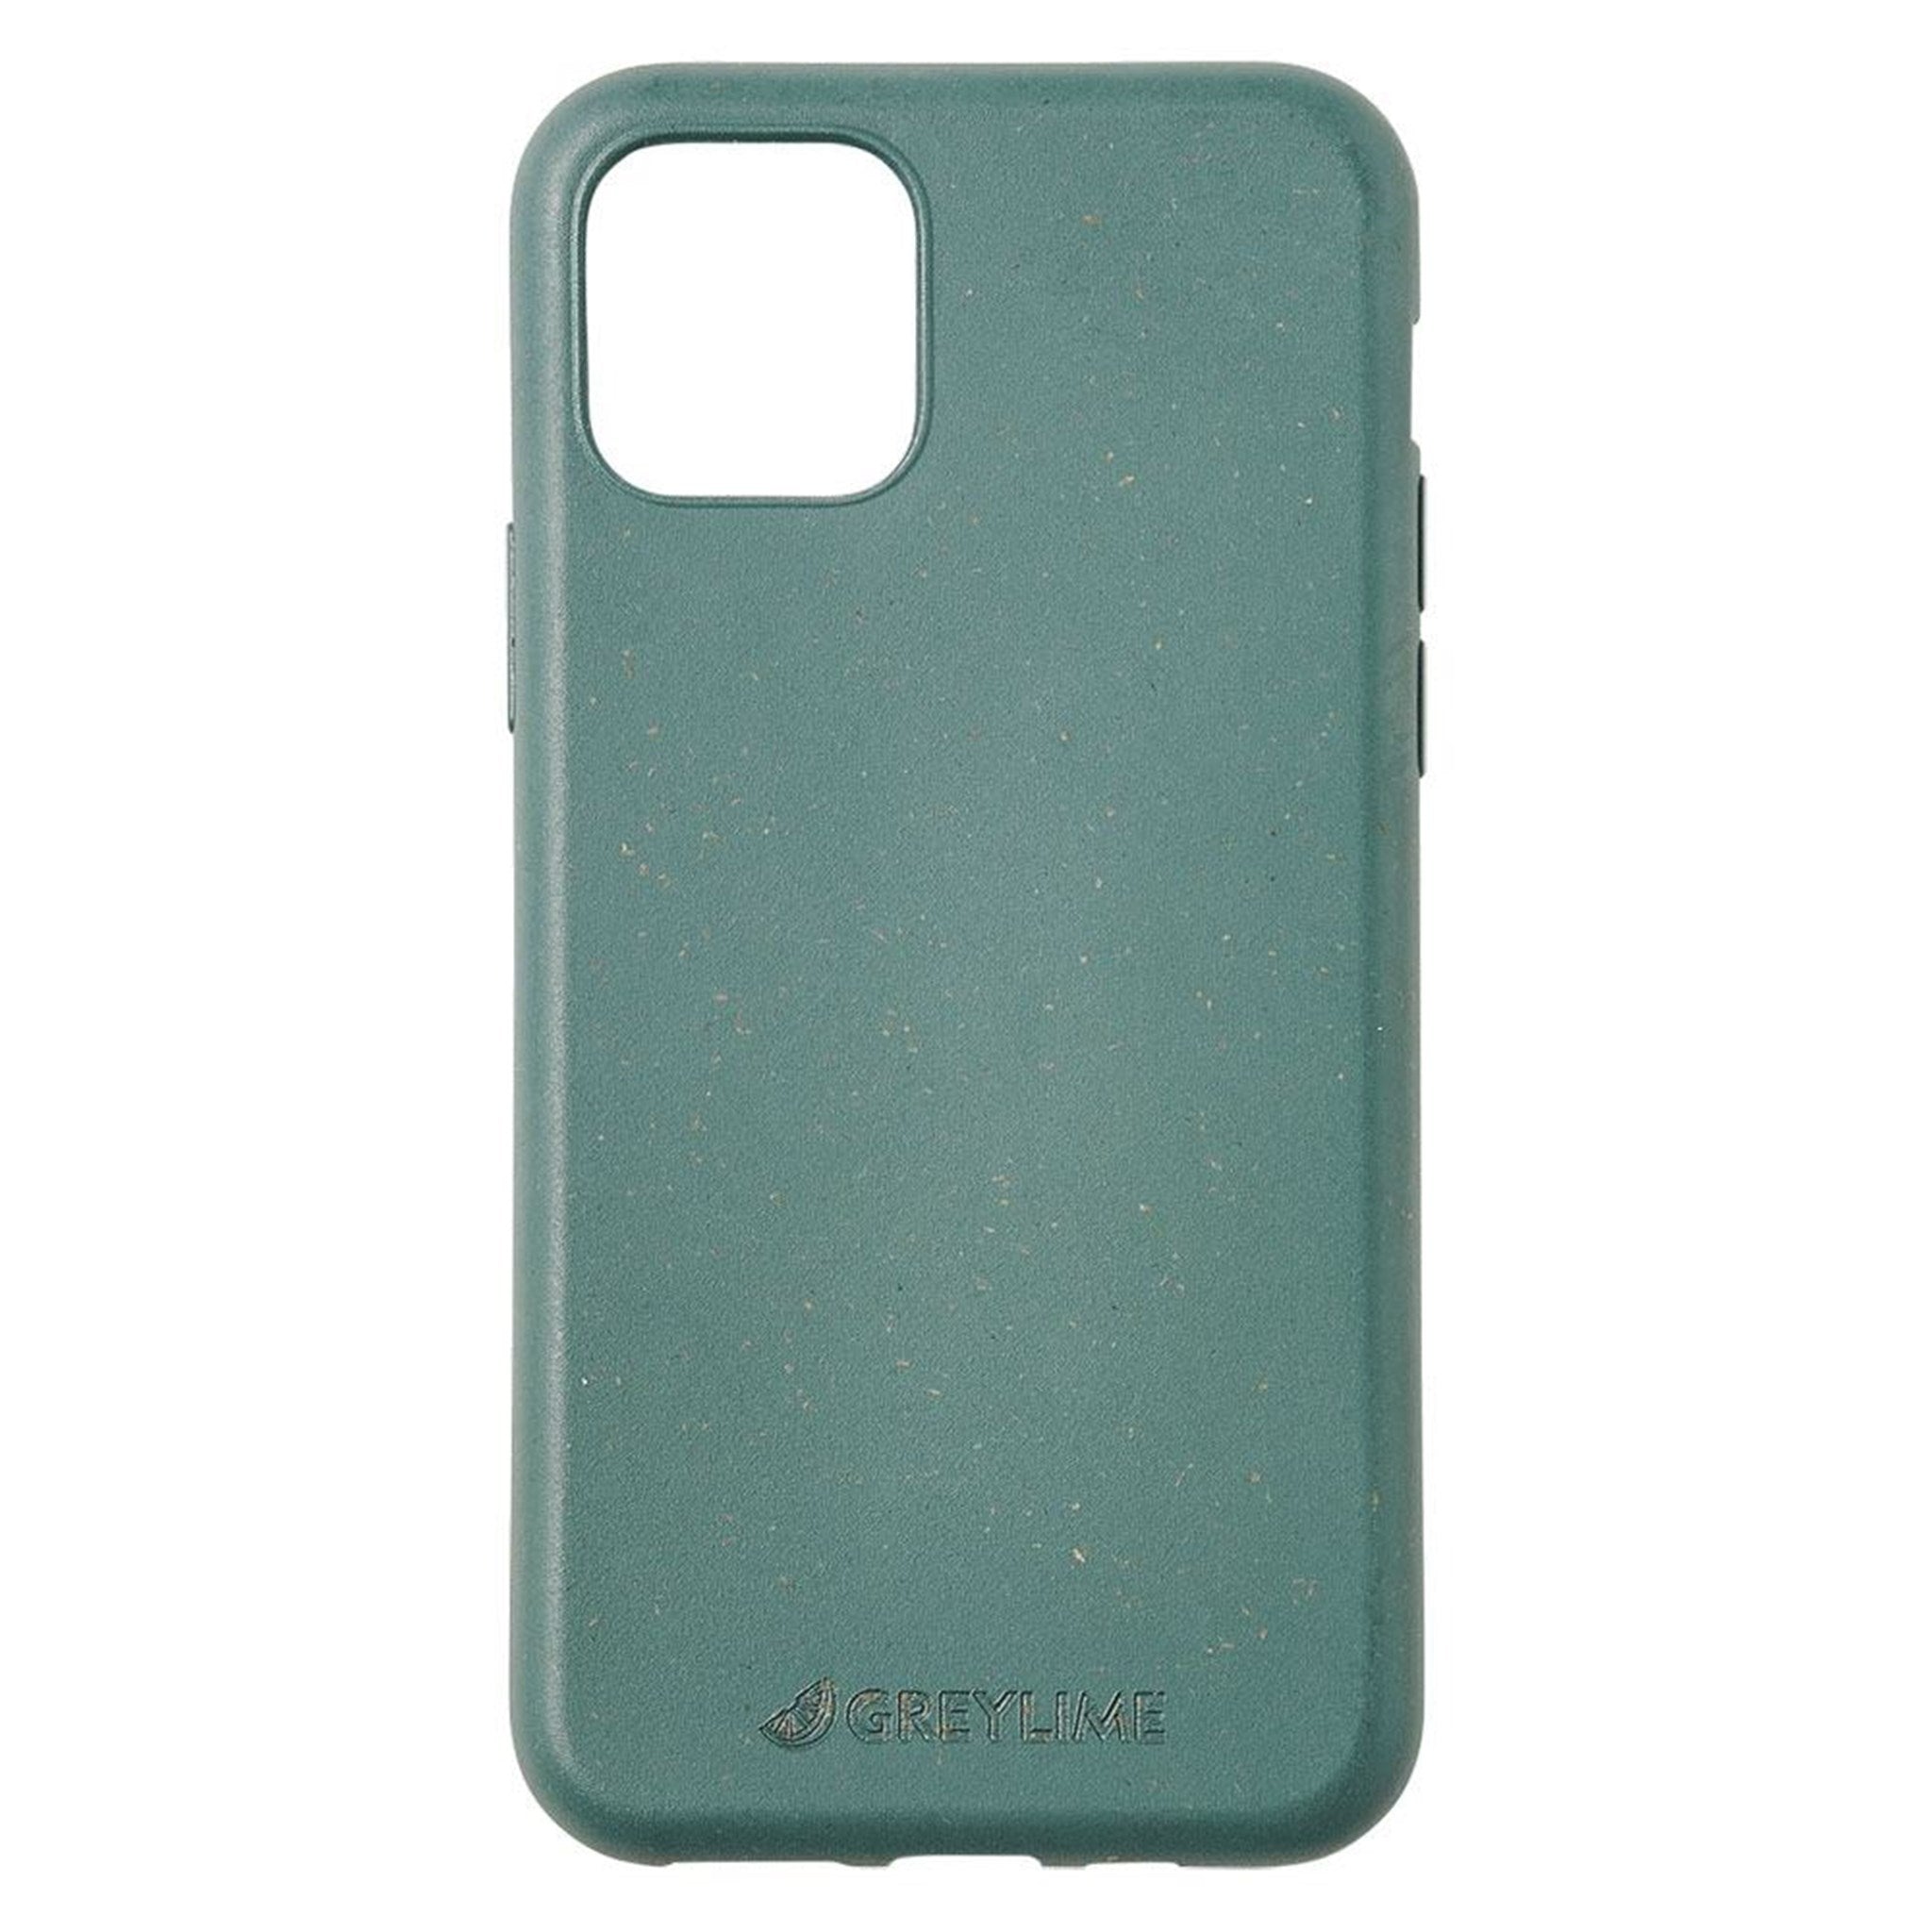 Se GreyLime iPhone 11 Pro Max miljøvenligt cover, Grøn hos GreyLime